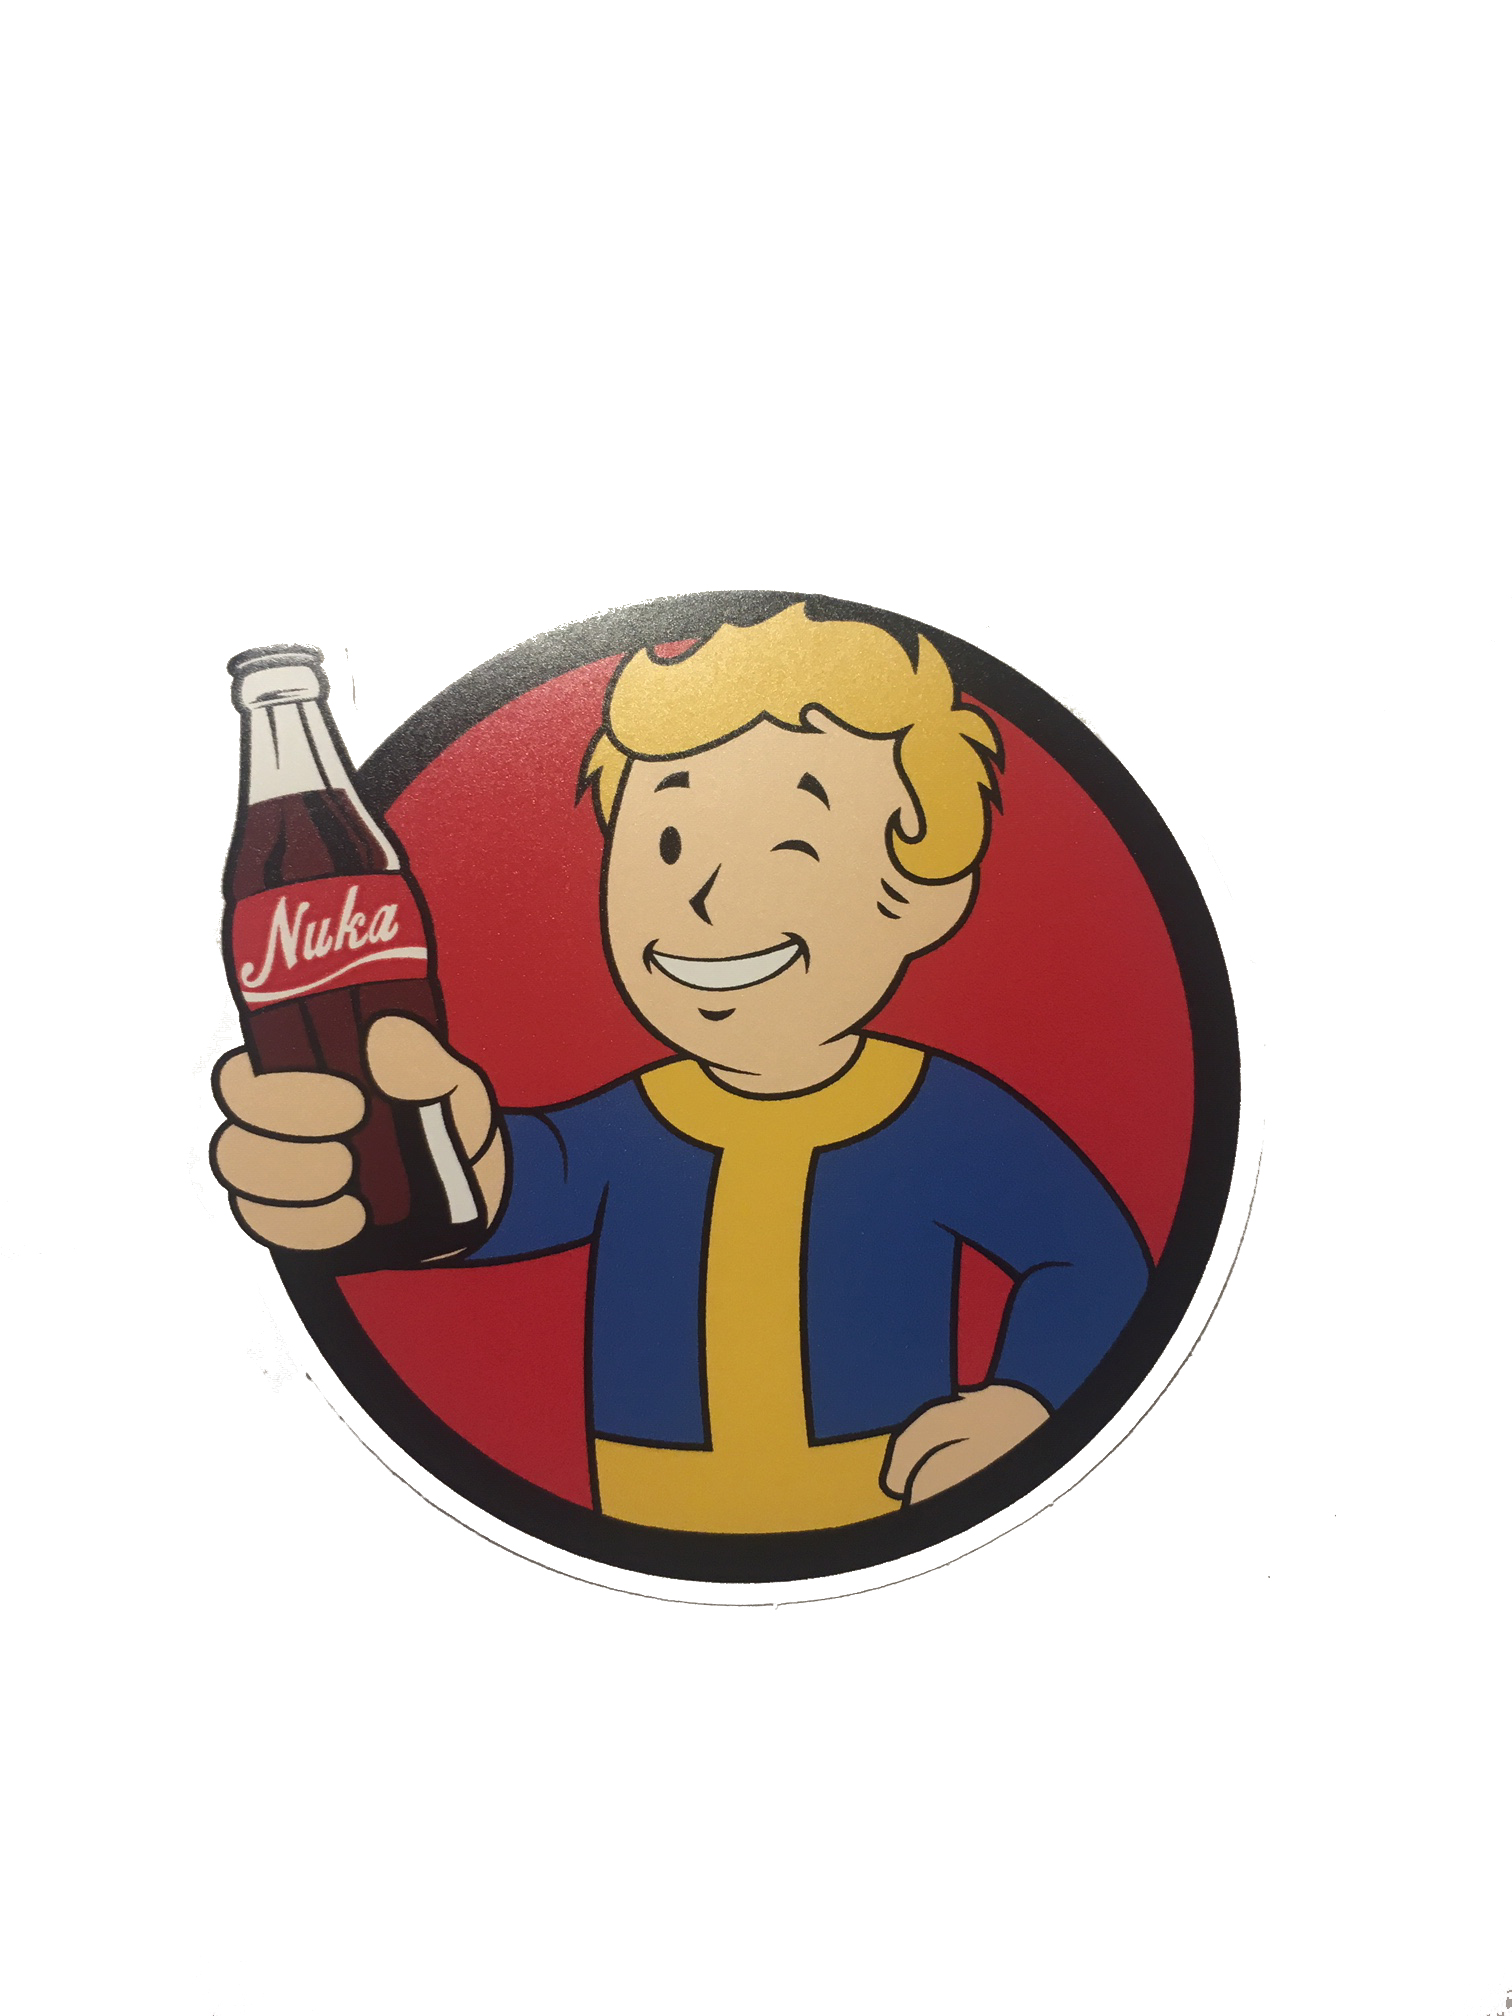 Fallout 4 ланч бокс фото 50